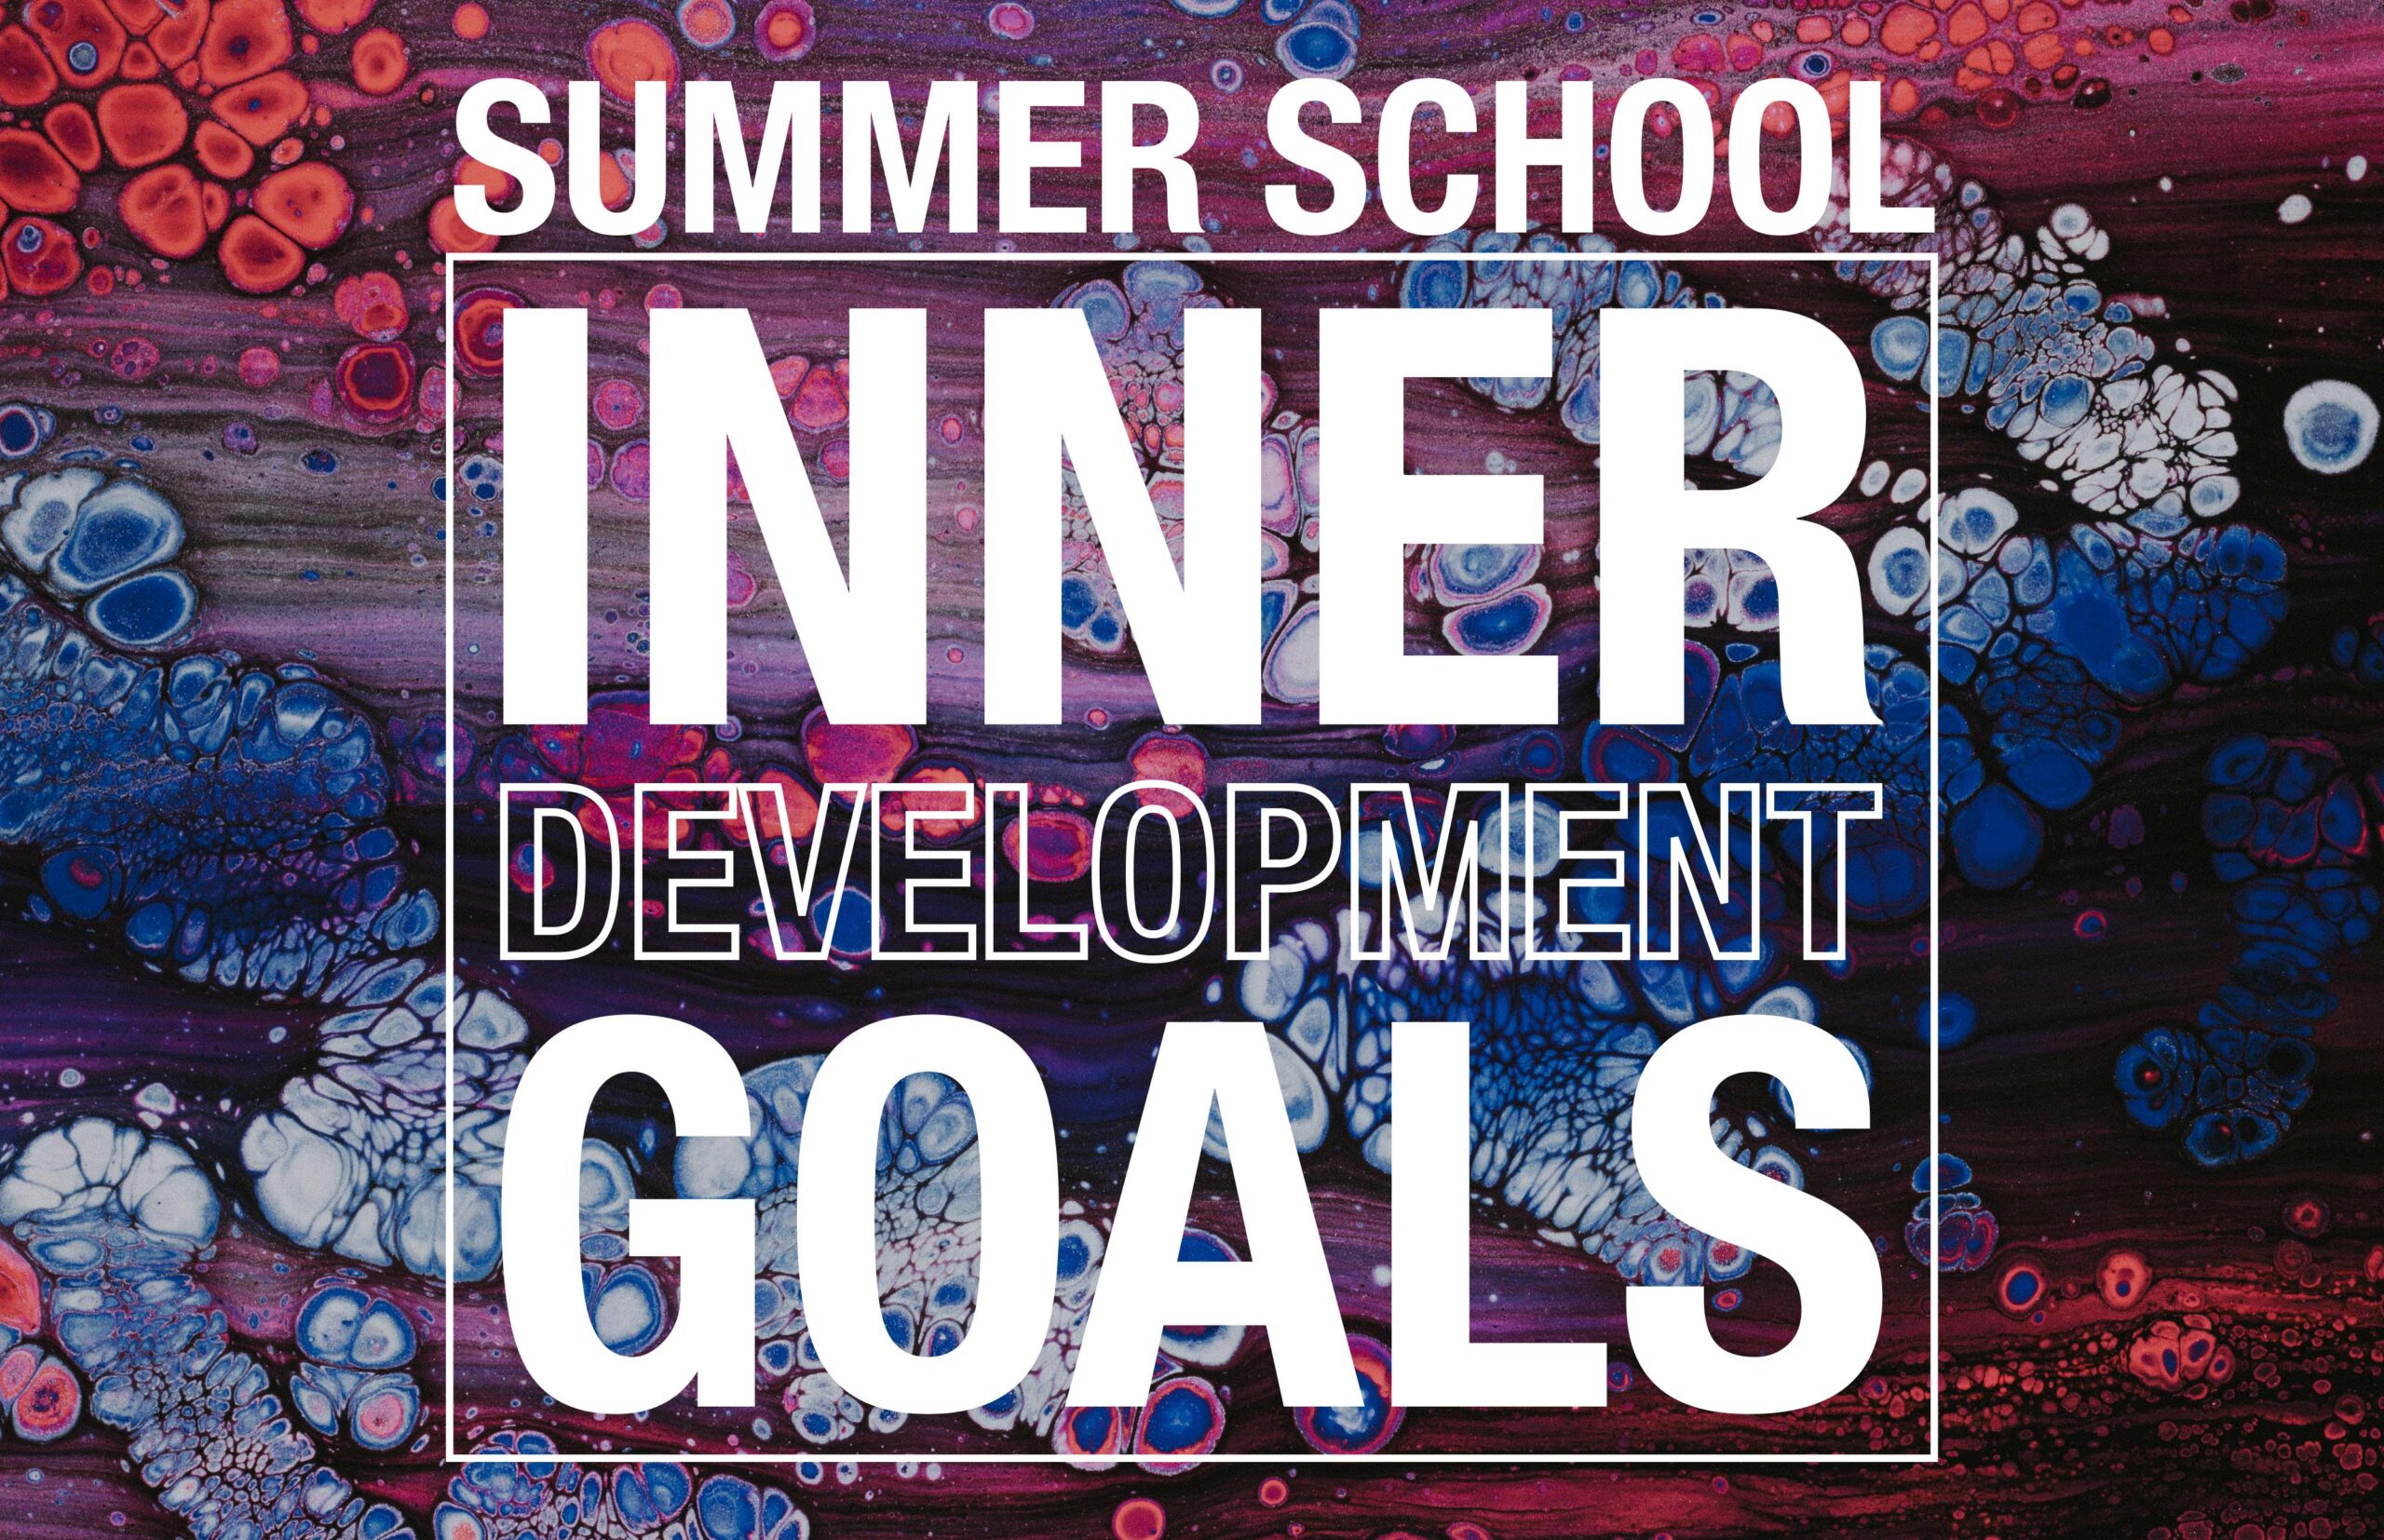 Summer School: Transformational Skills for a better world (EN)